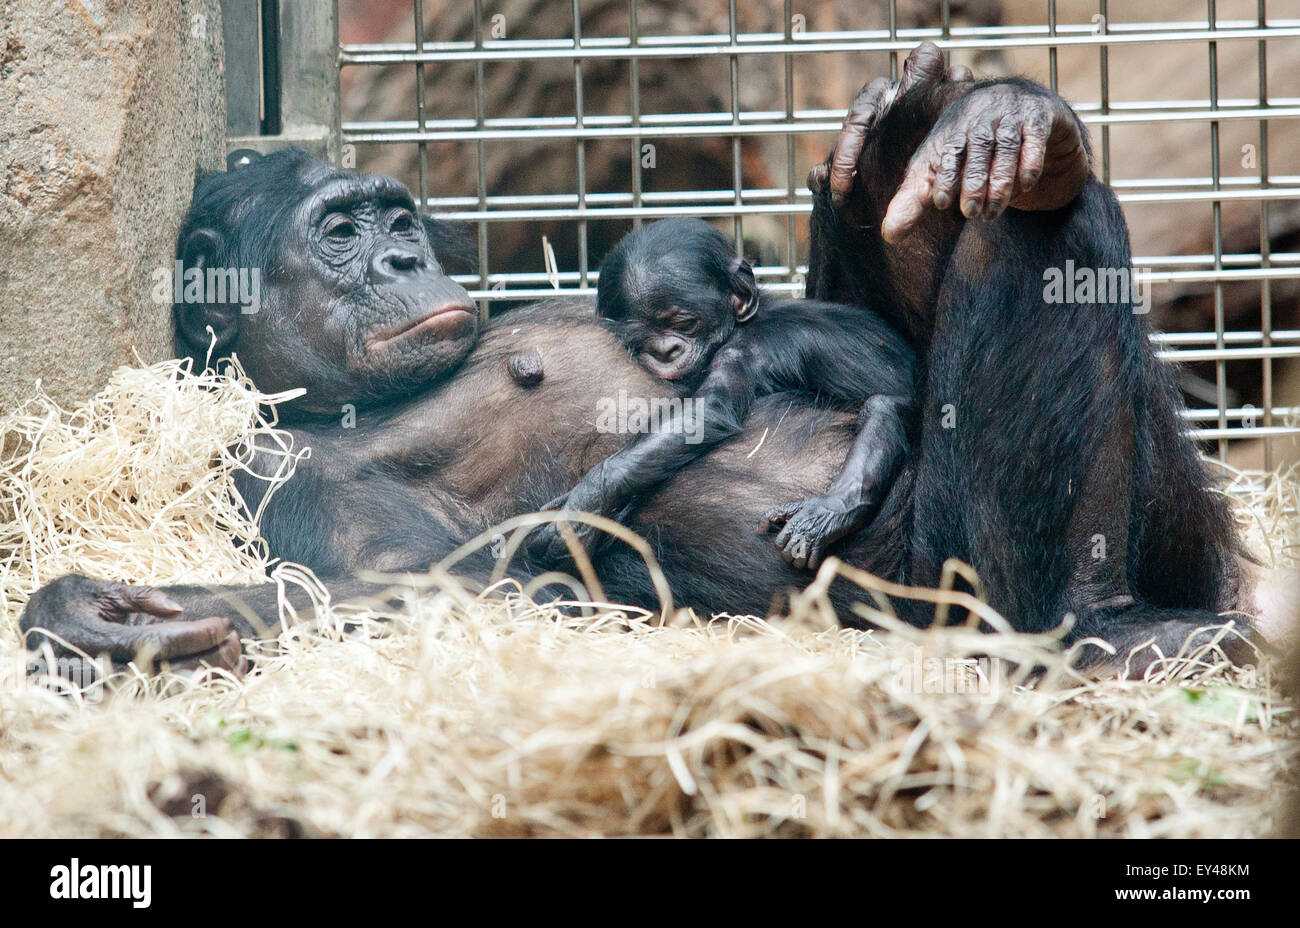 Un bebé bonobo nació el 18 de julio de 2015 contiene en el vientre de su madre "Kutu" como mienten en su recinto del zoo de Frankfurt am Main, Alemania, el 21 de julio de 2015. El bebé bonobo todavía no se ha nombrado como su género es todavía desconocida. Foto: CHRISTOPH SCHMIDT/dpa Foto de stock